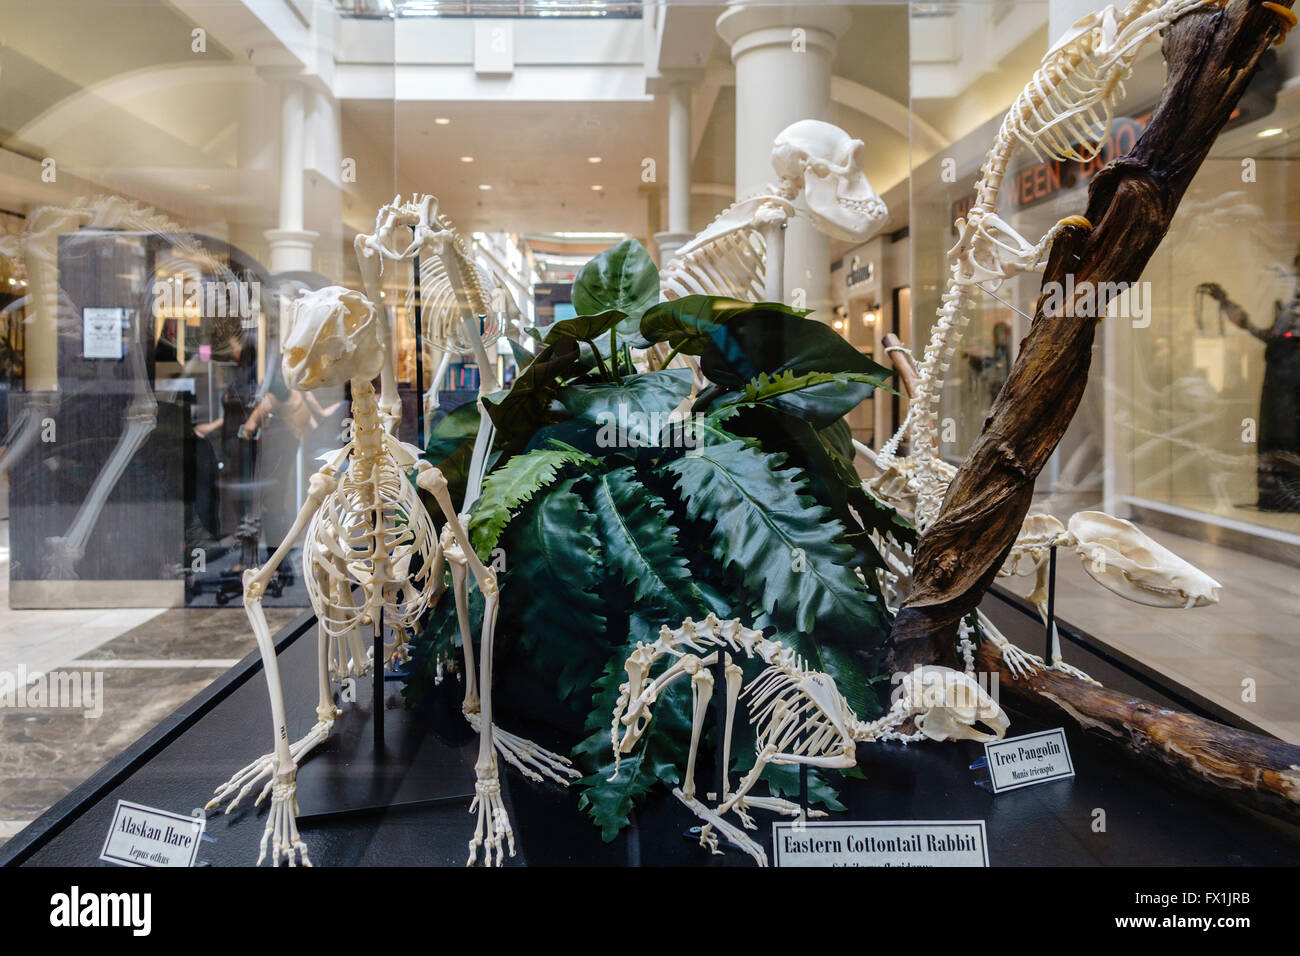 L'uomo ha fatto fossili esposti in un centro commerciale per lo shopping nella città di Oklahoma, Oklahoma, Stati Uniti d'America. Foto Stock